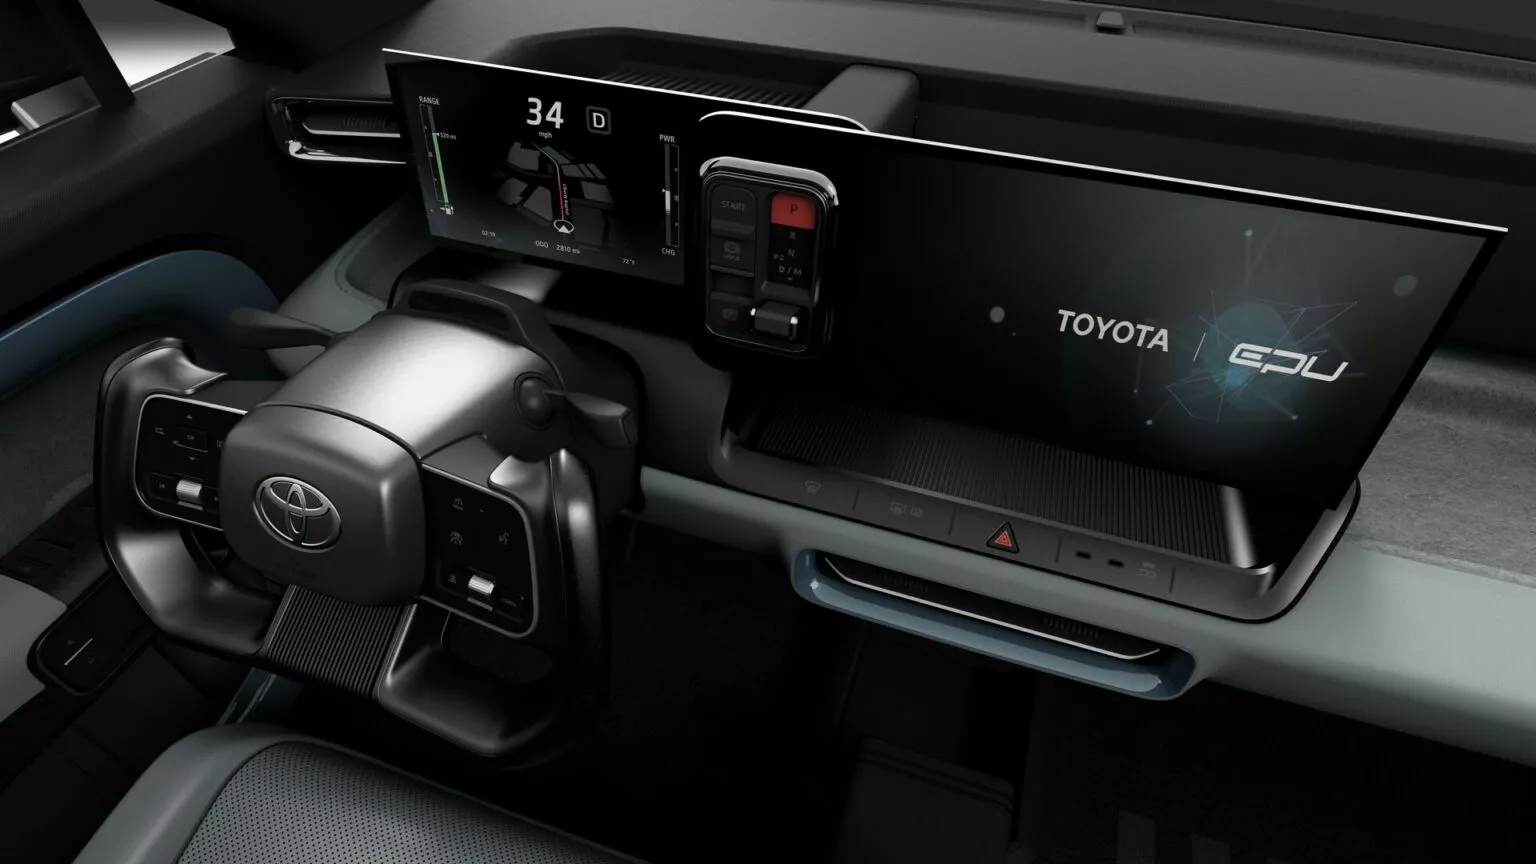 Nova pickup Toyota EPU Concept / Foto: Toyota